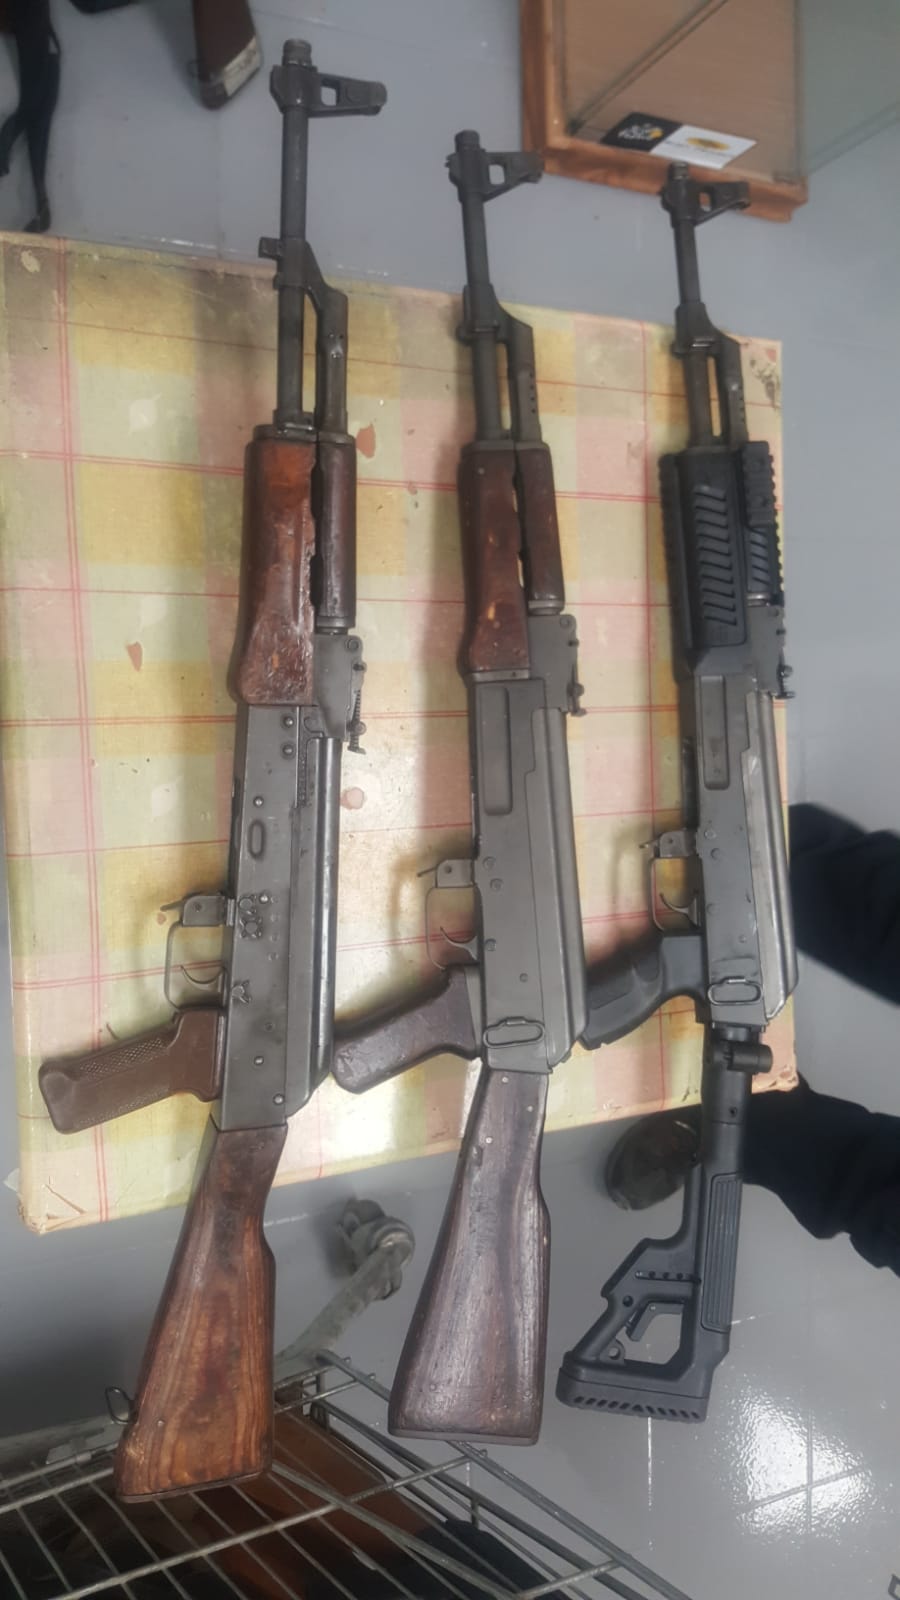 AK47 and AKM rifles